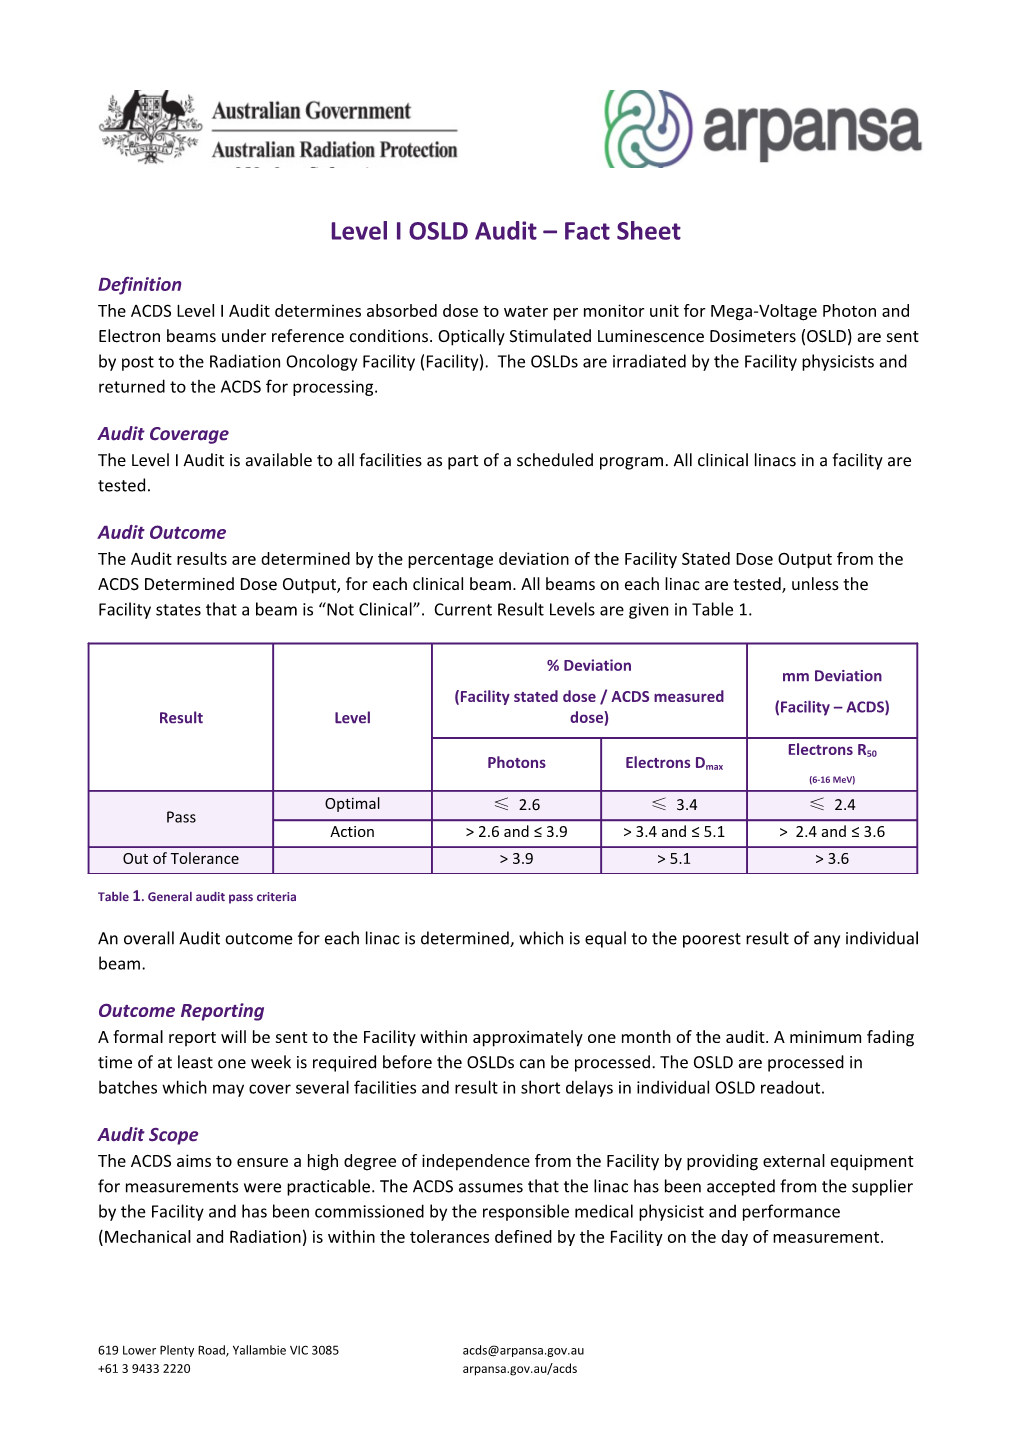 Level I OSLD Audit Fact Sheet